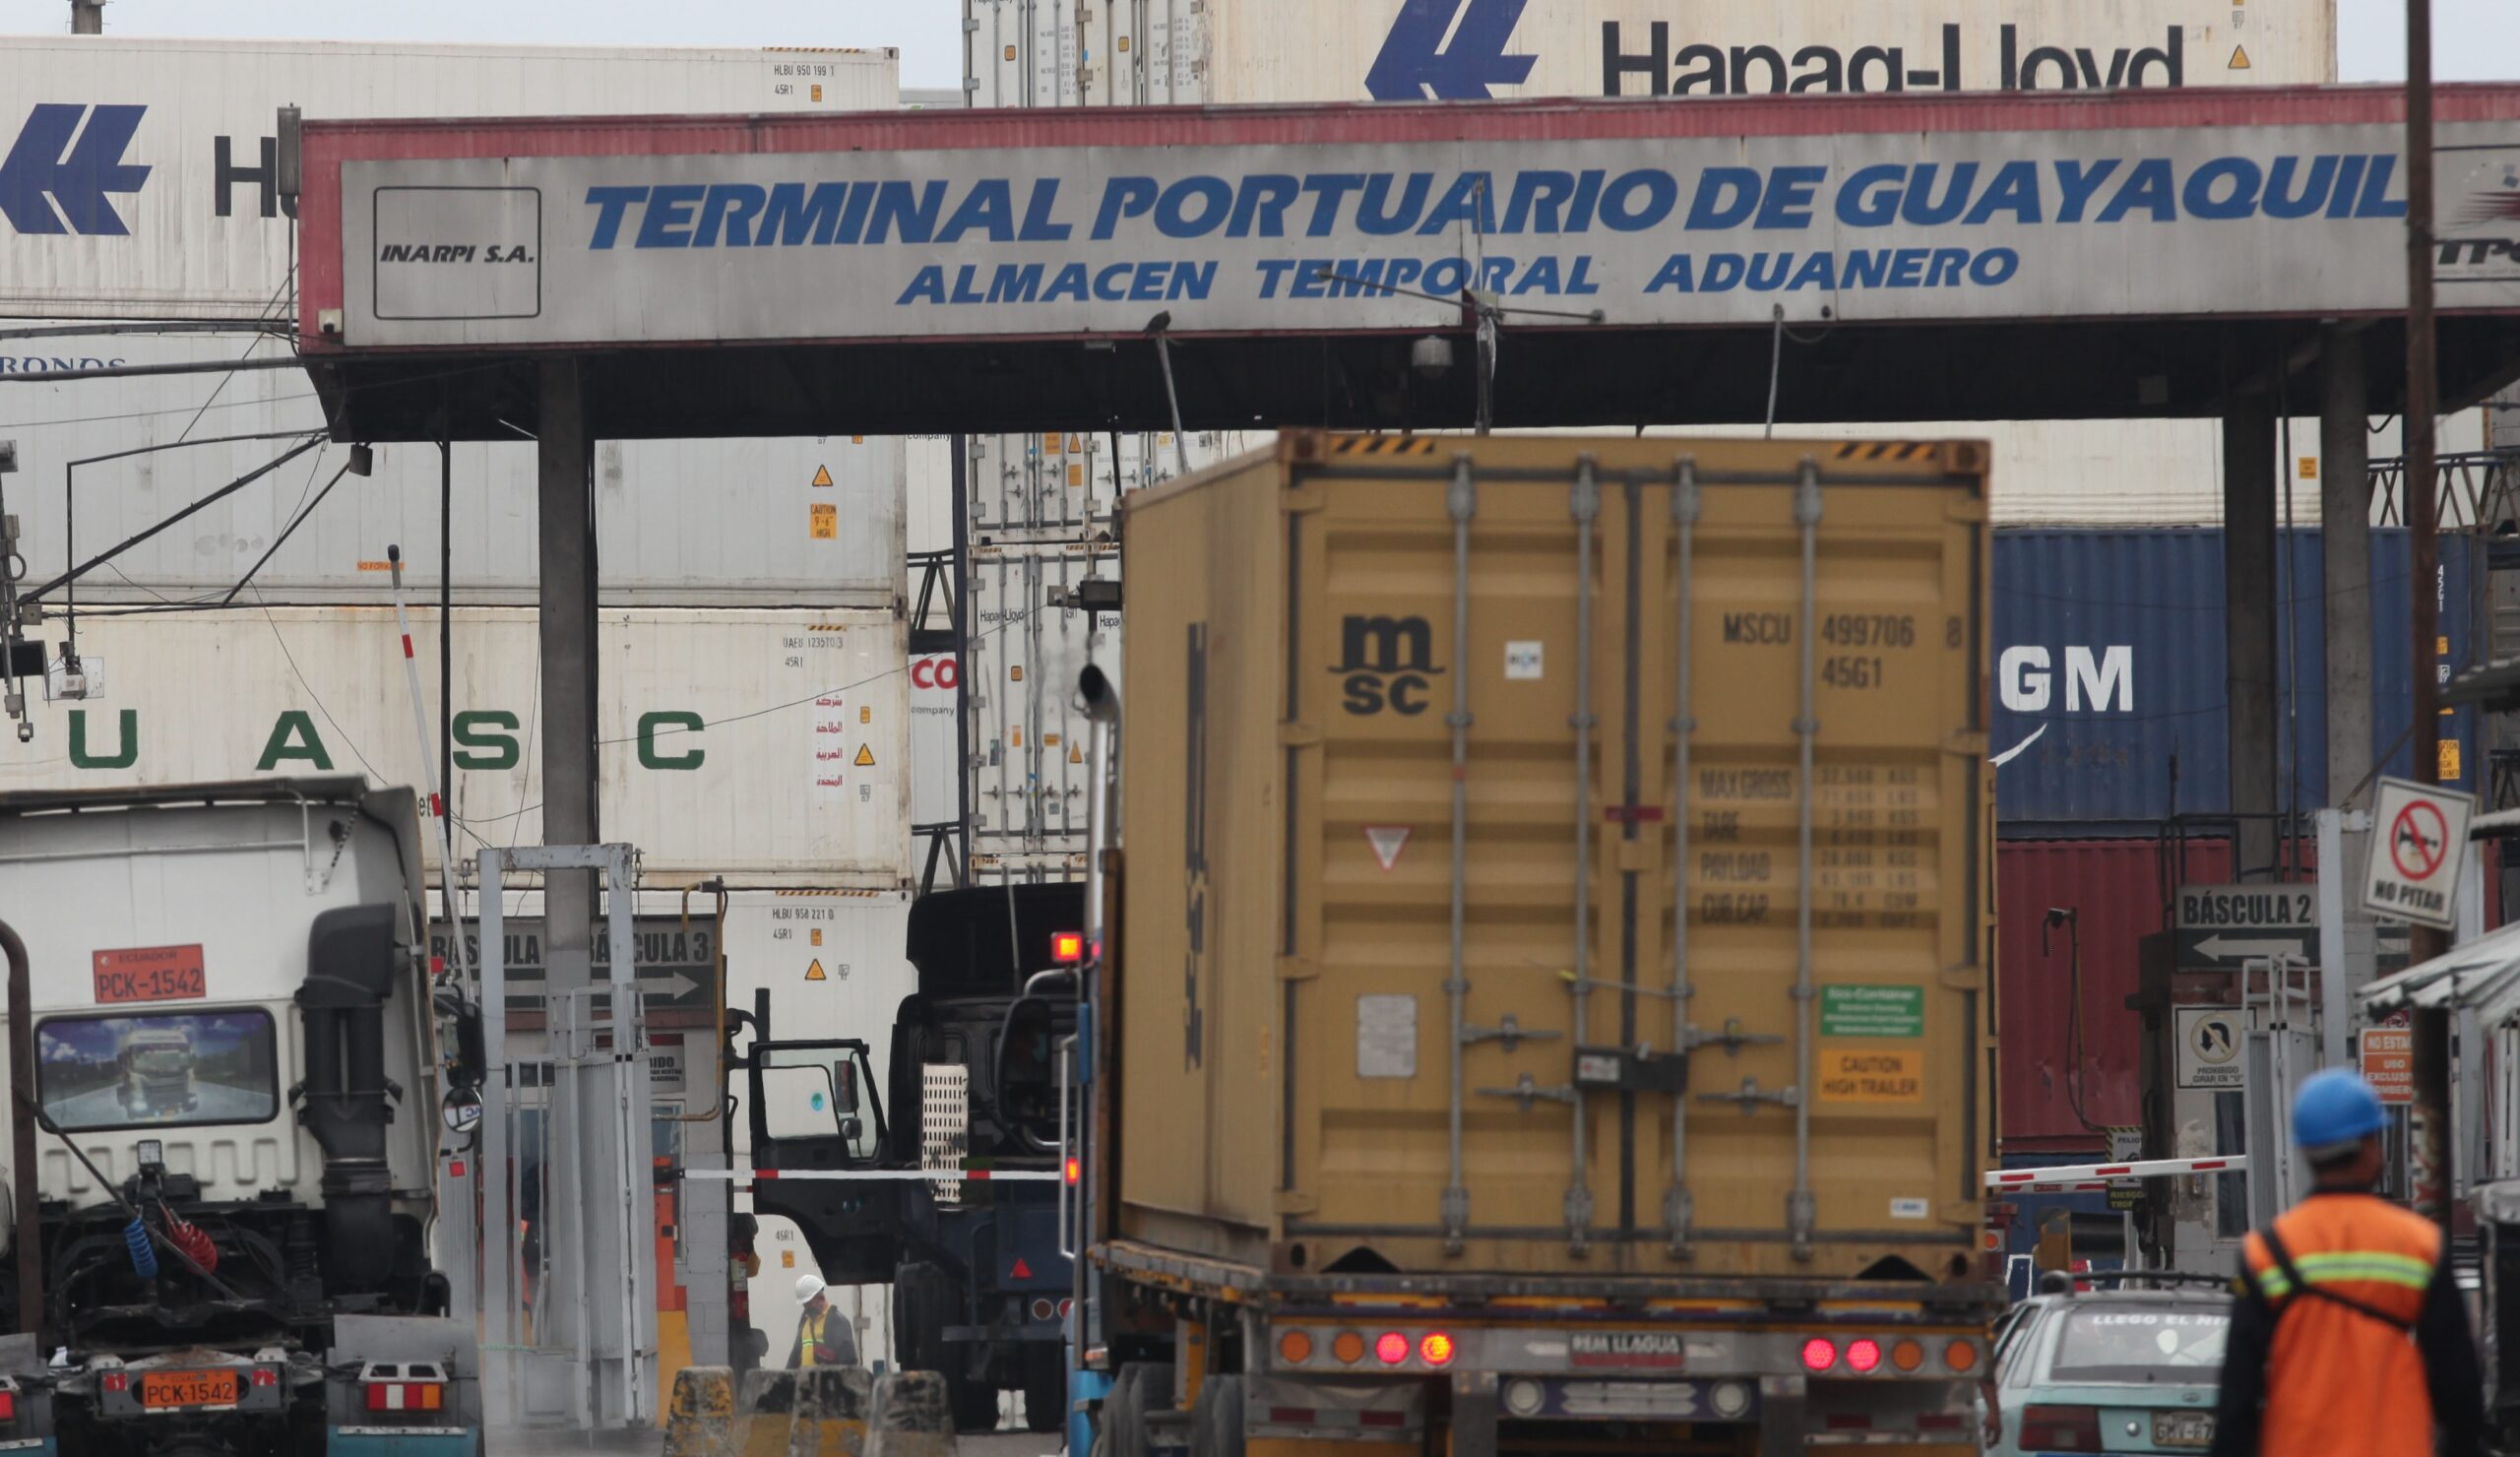 Llegada y salida de camiones con contenedores a la entrada del Terminal Portuario, en el sur de Guayaquil. Foto: Enrique Pesantes / EL COMERCIO